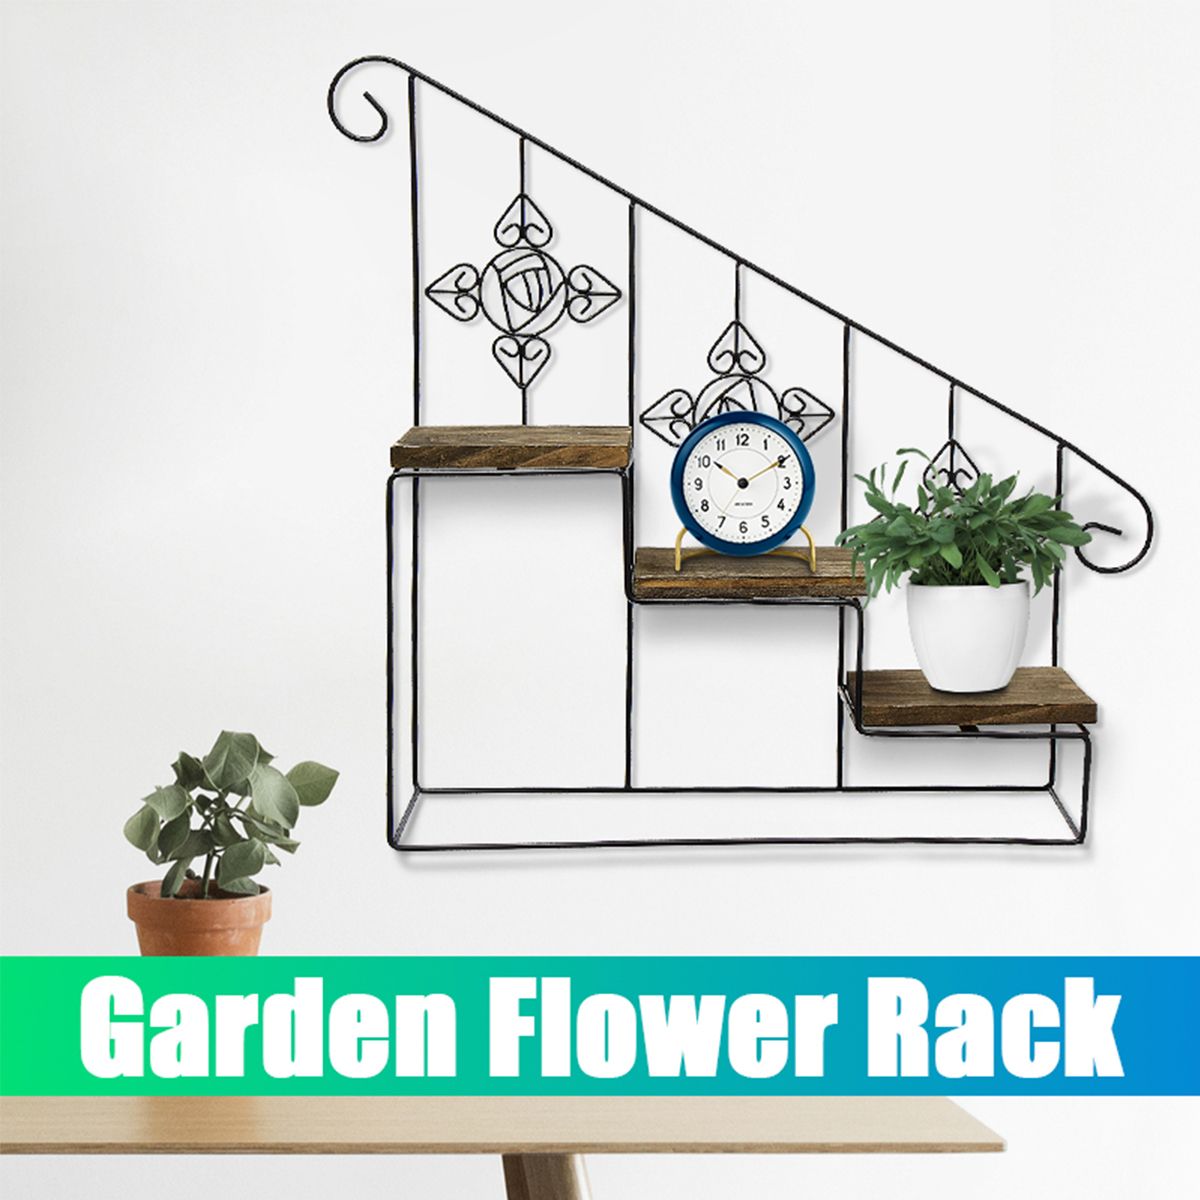 Plant-Stand-Dispaly-Shelf-Garden-Flower-Rack-Home-Kitchen-Room-Storage-1563690